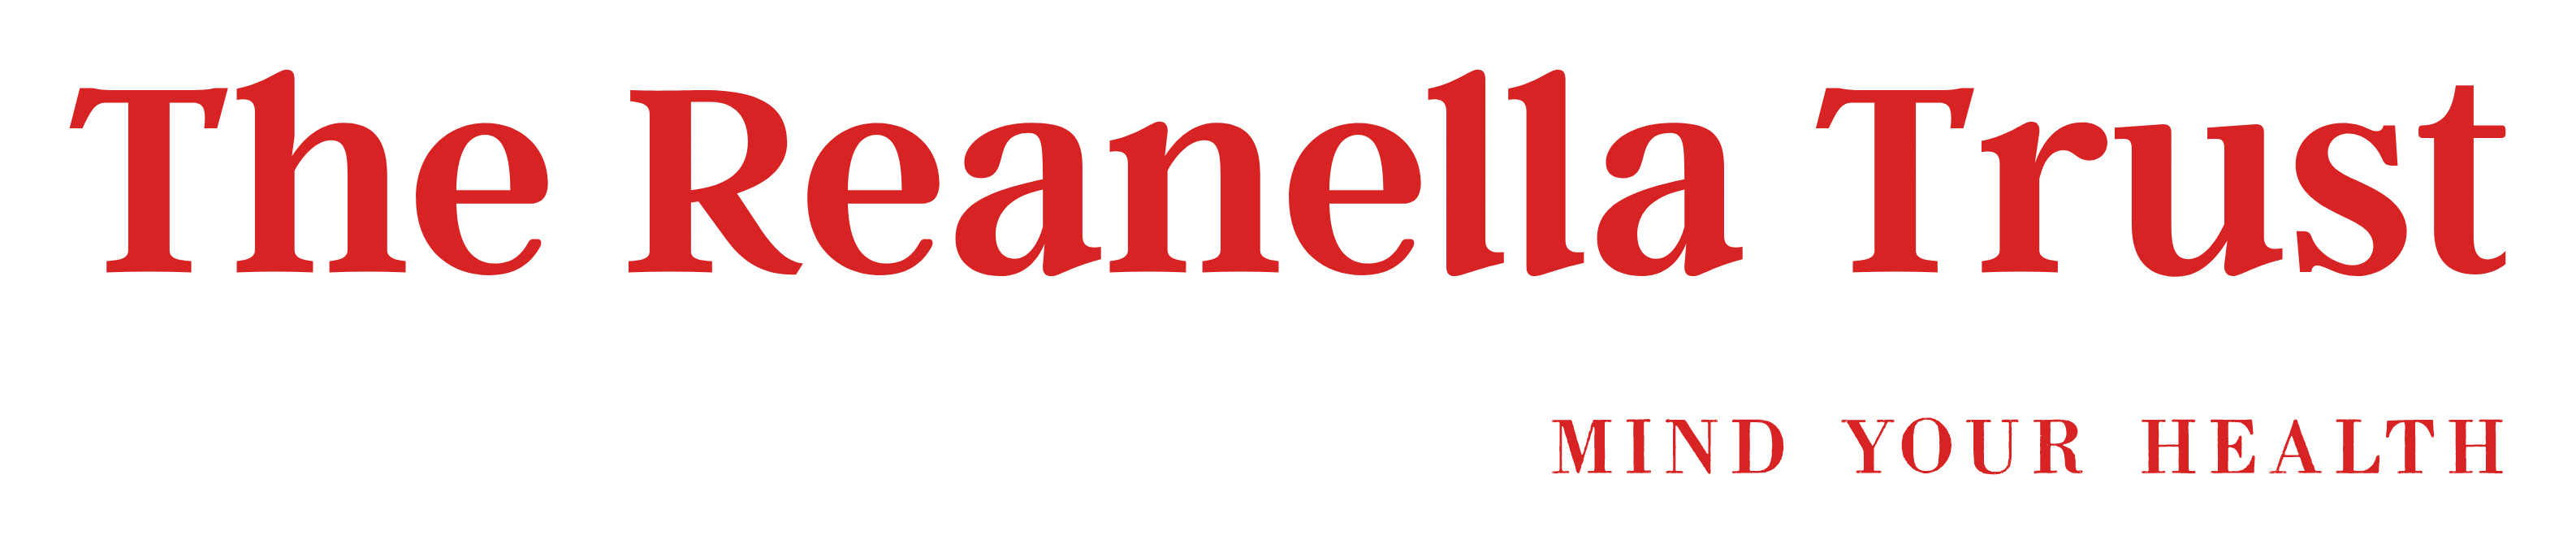 The Reanella Trust logo